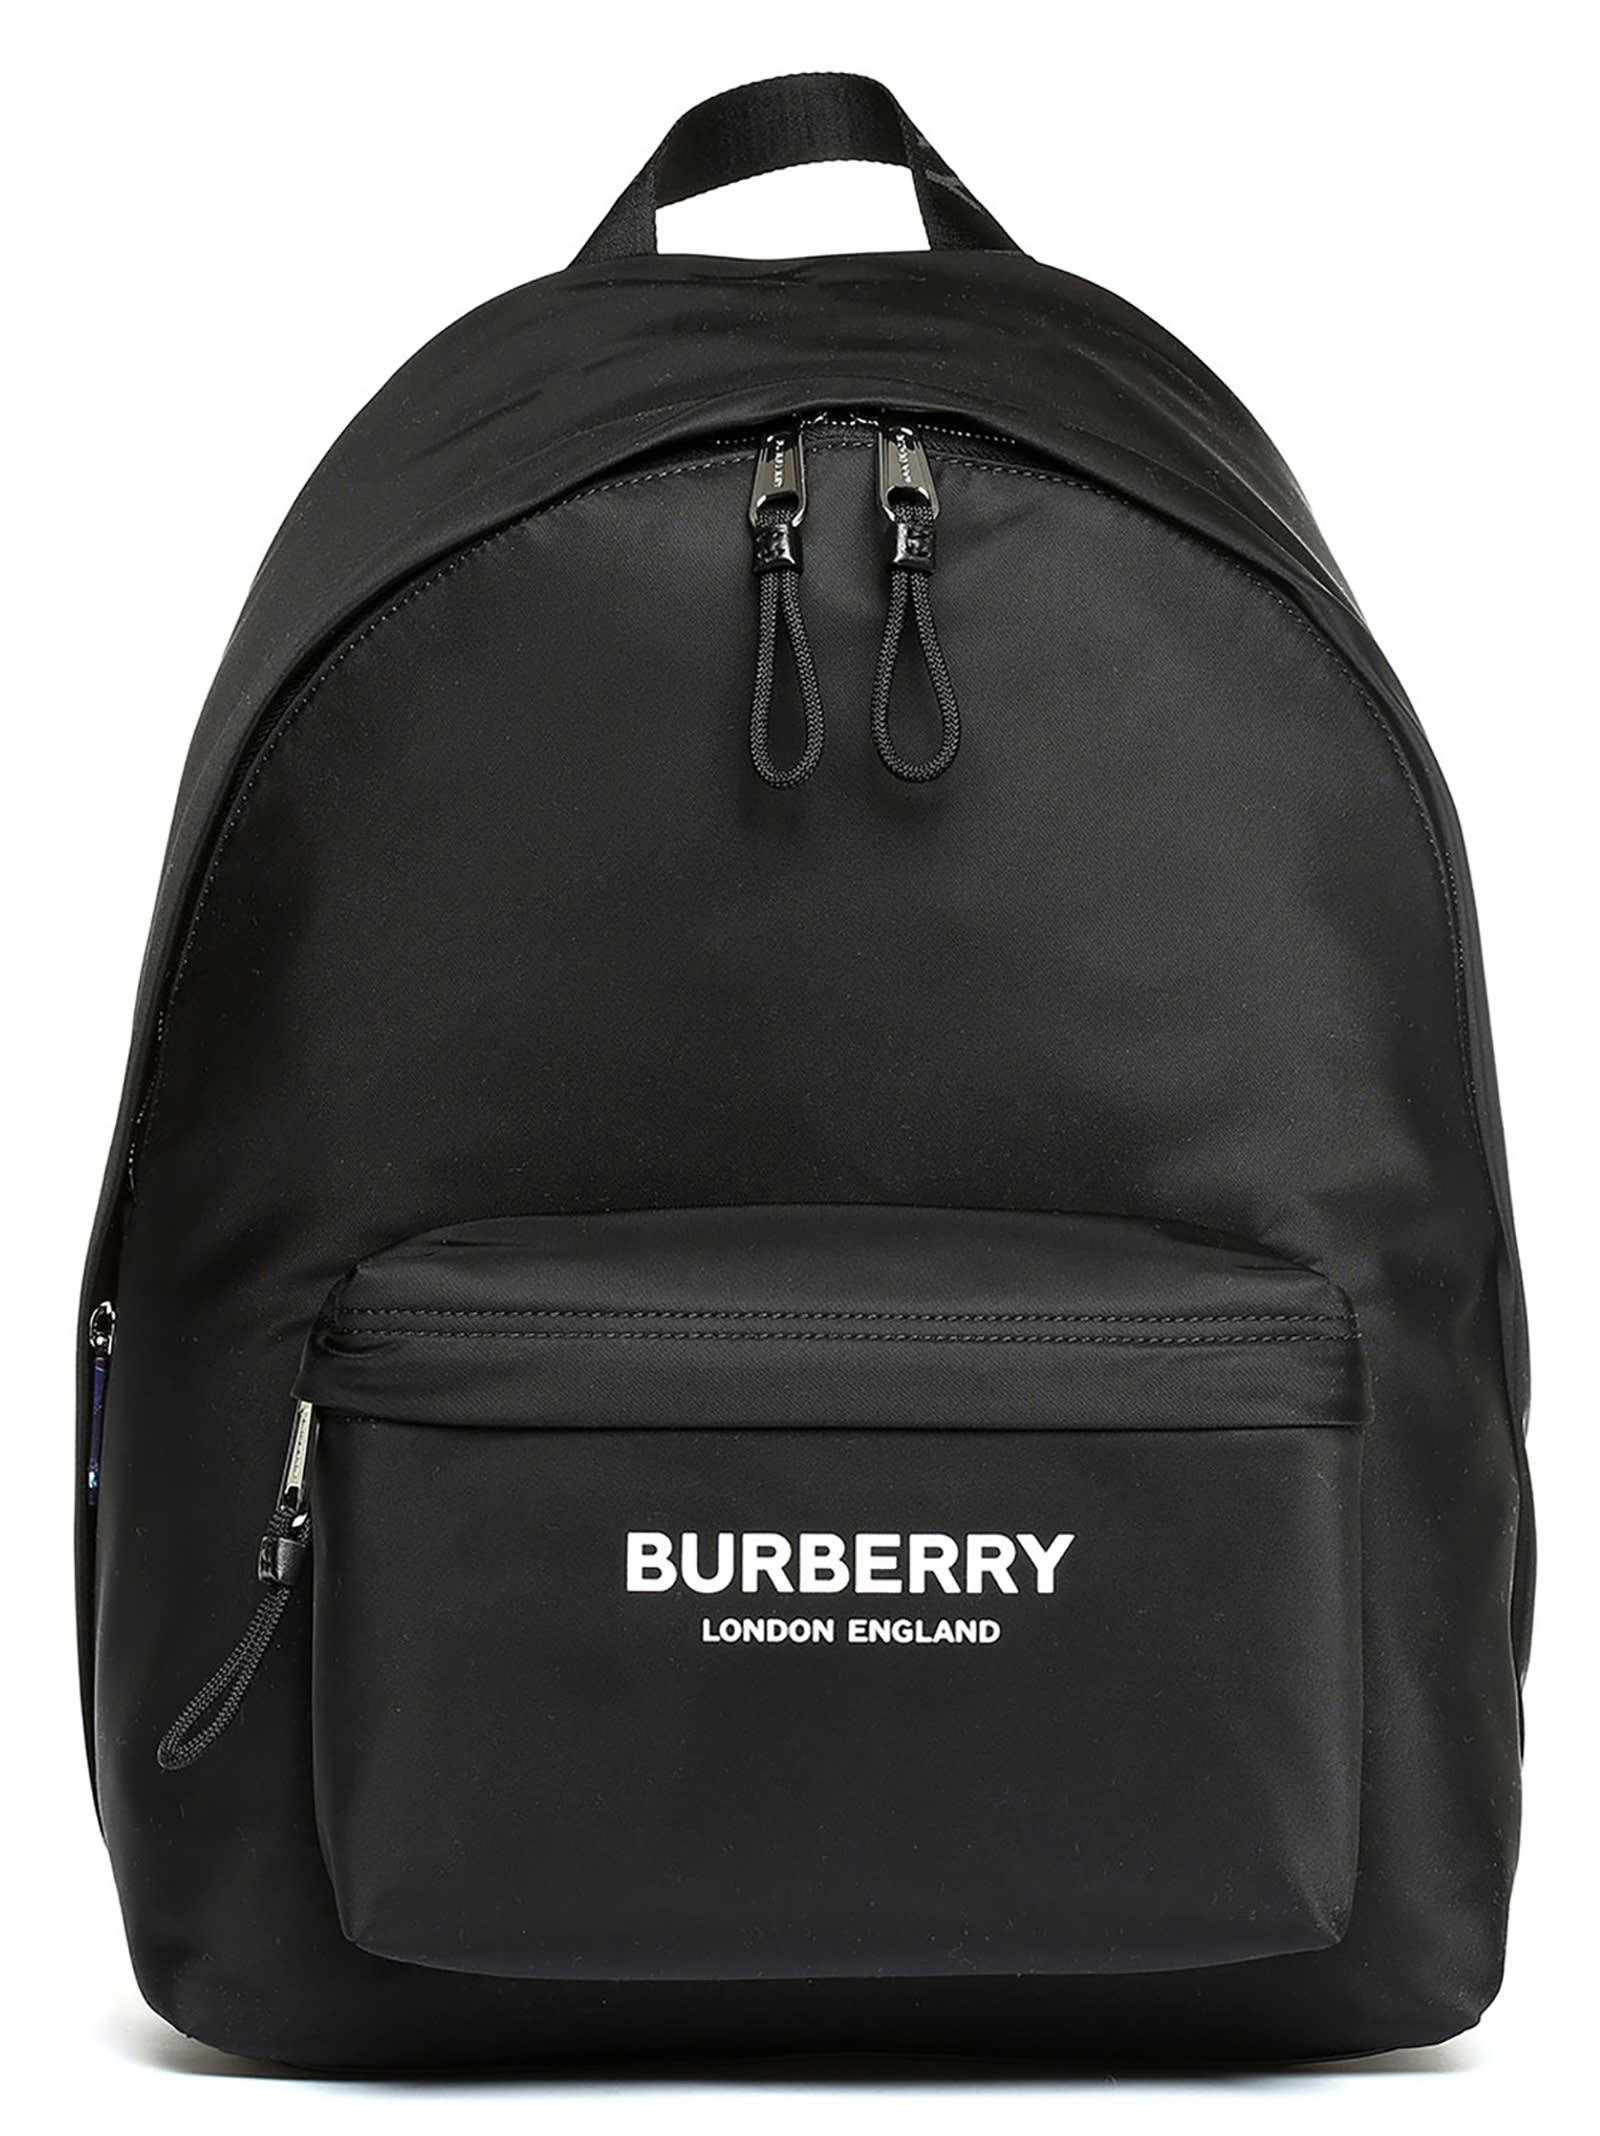 Burberry jett Backpack